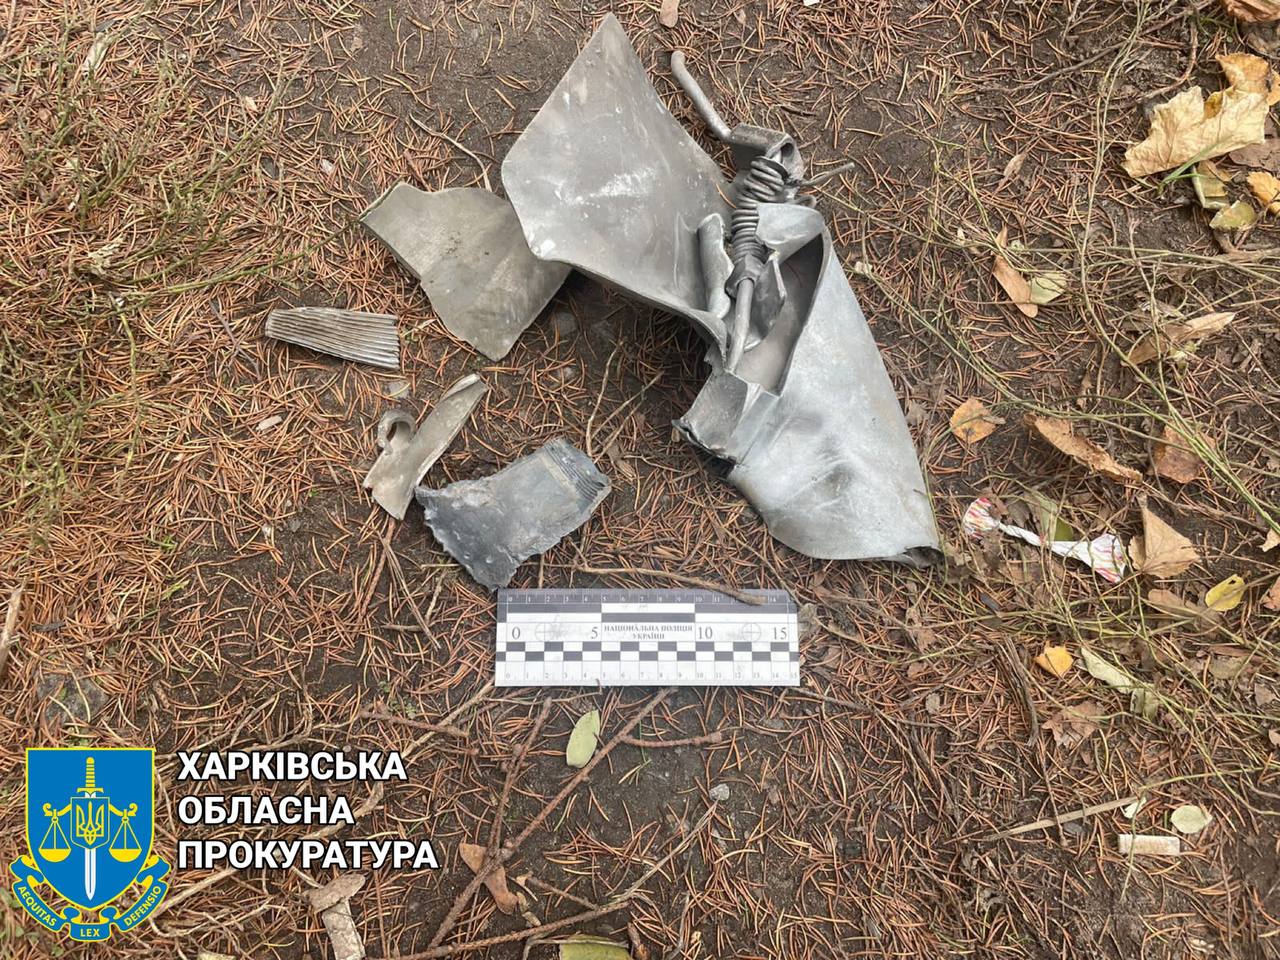 Ракета, упавшая на Харьковщине 15 ноября